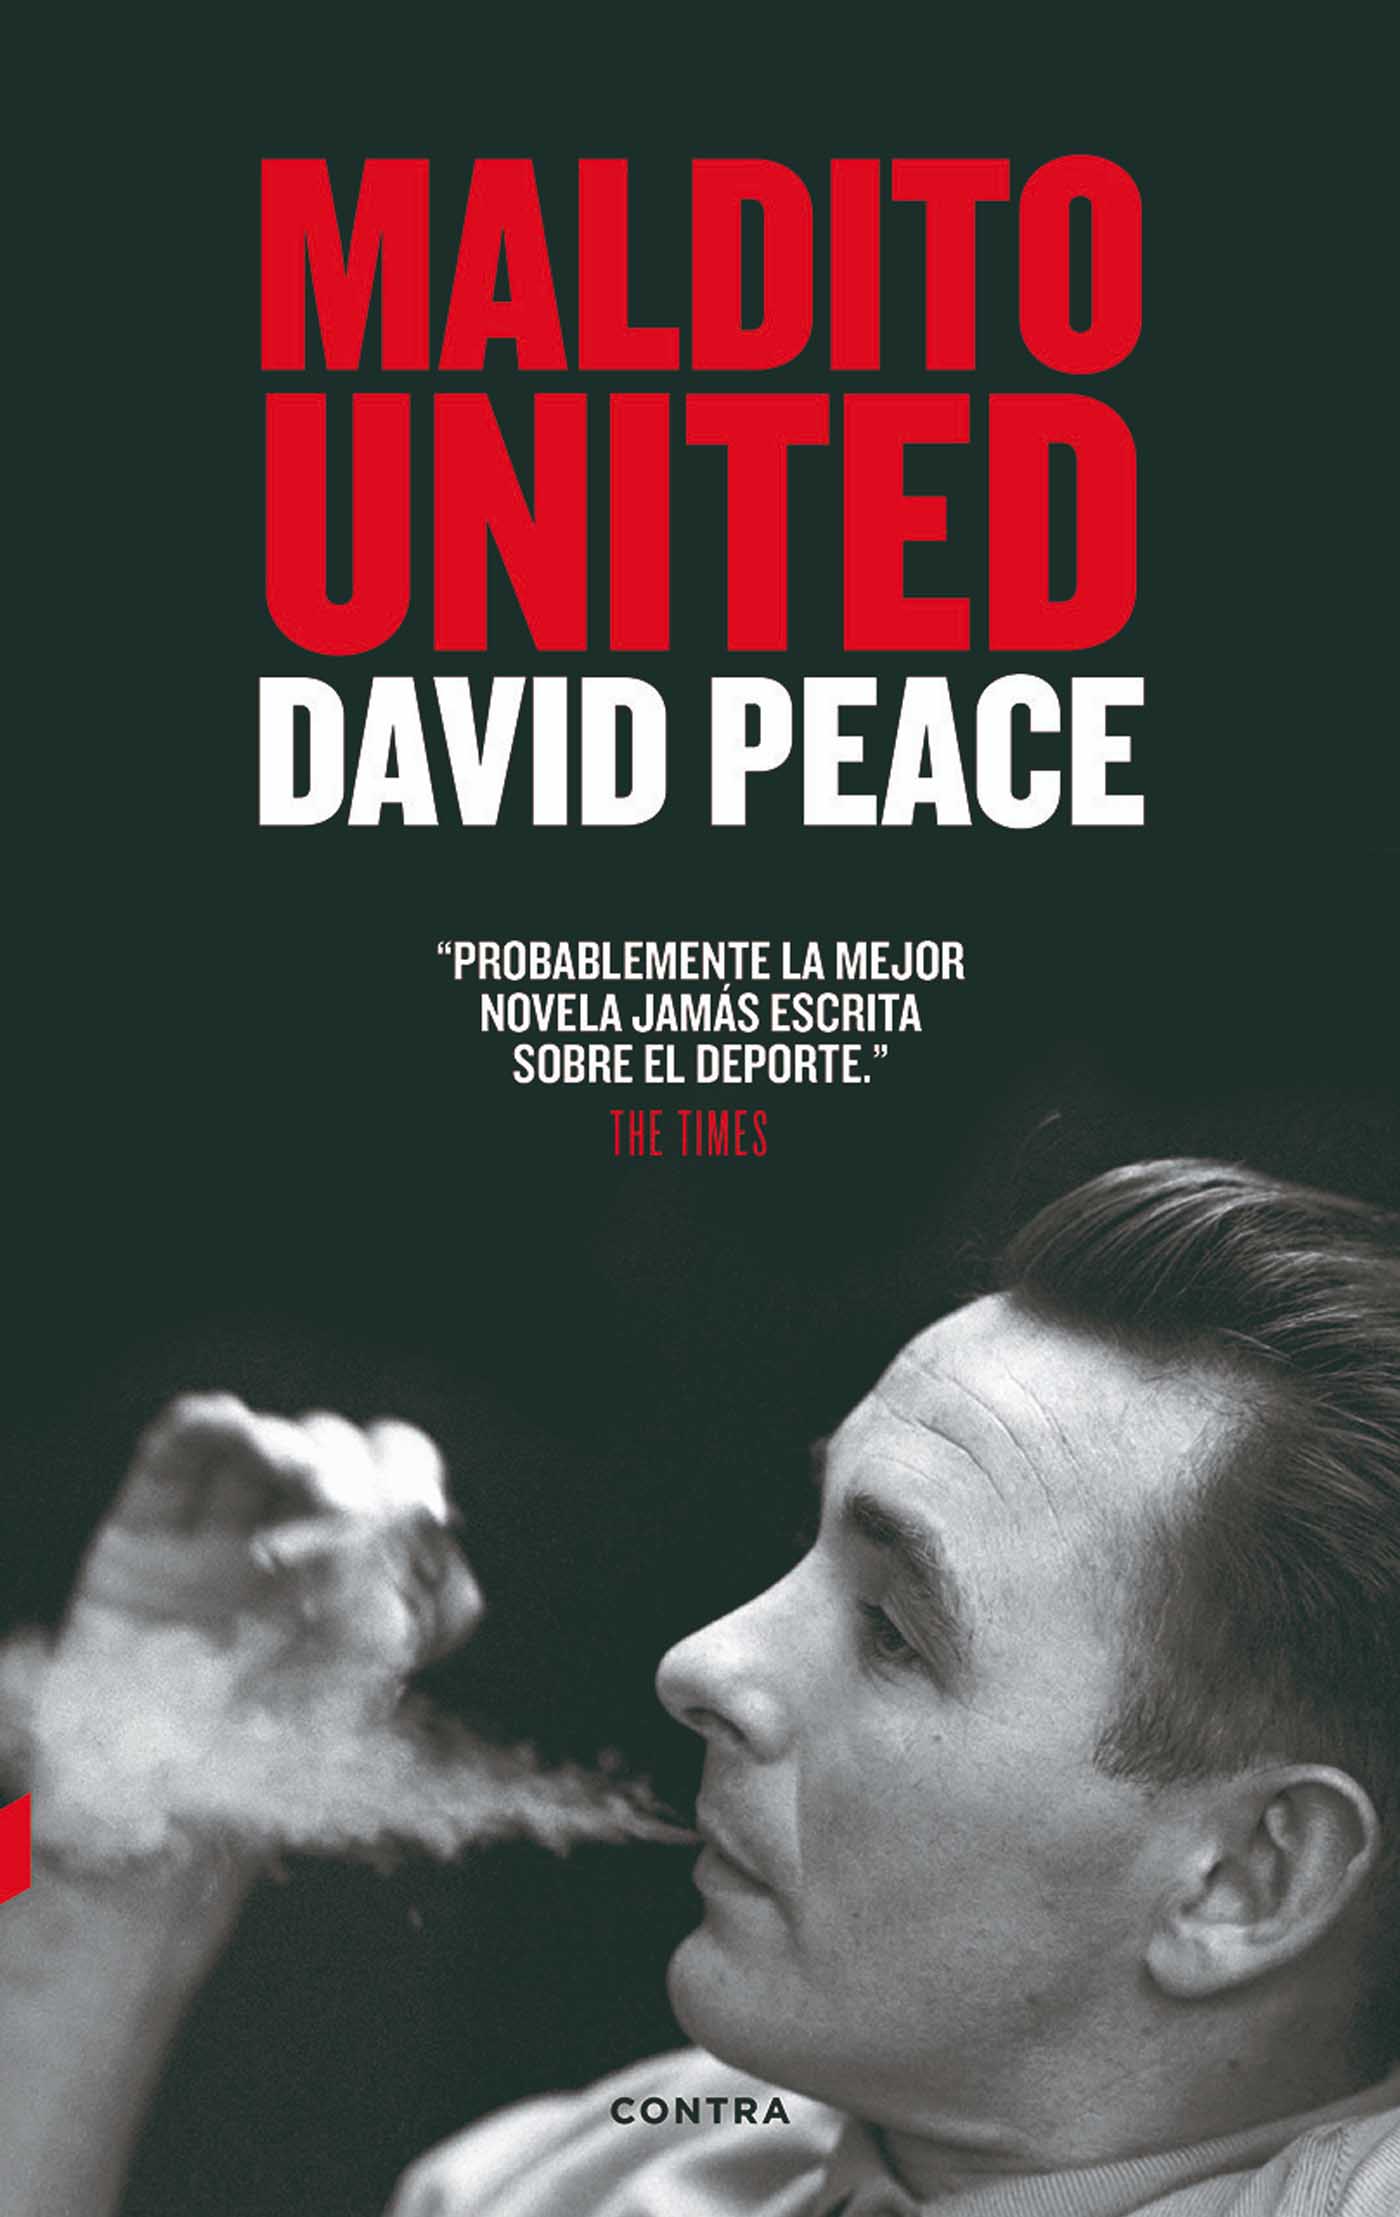 Maldito United David Peace